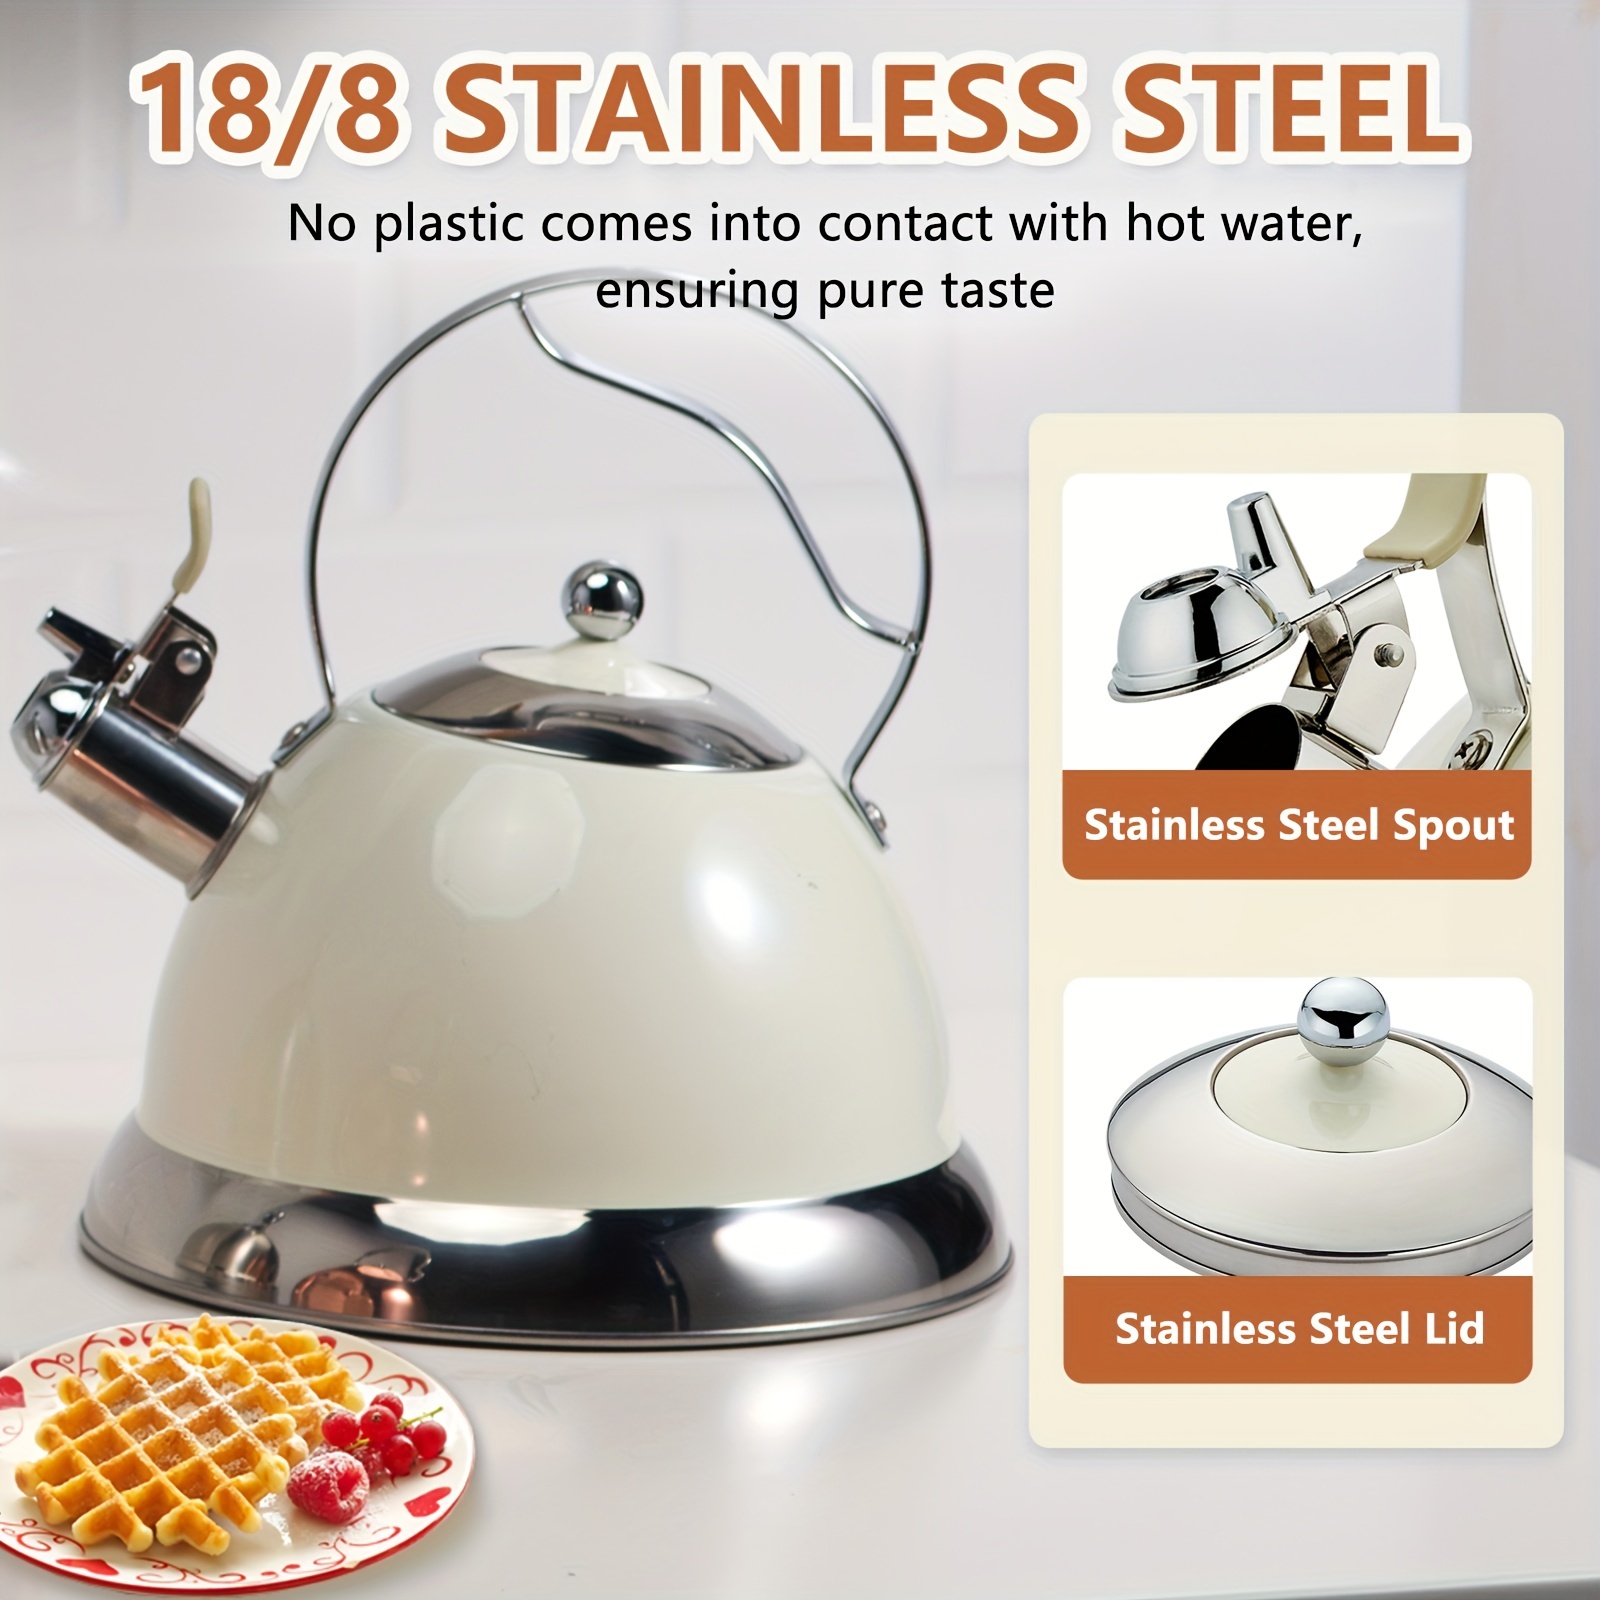 2.6/3.2qt Stainless Steel Teakettle, Whistling Tea Kettle